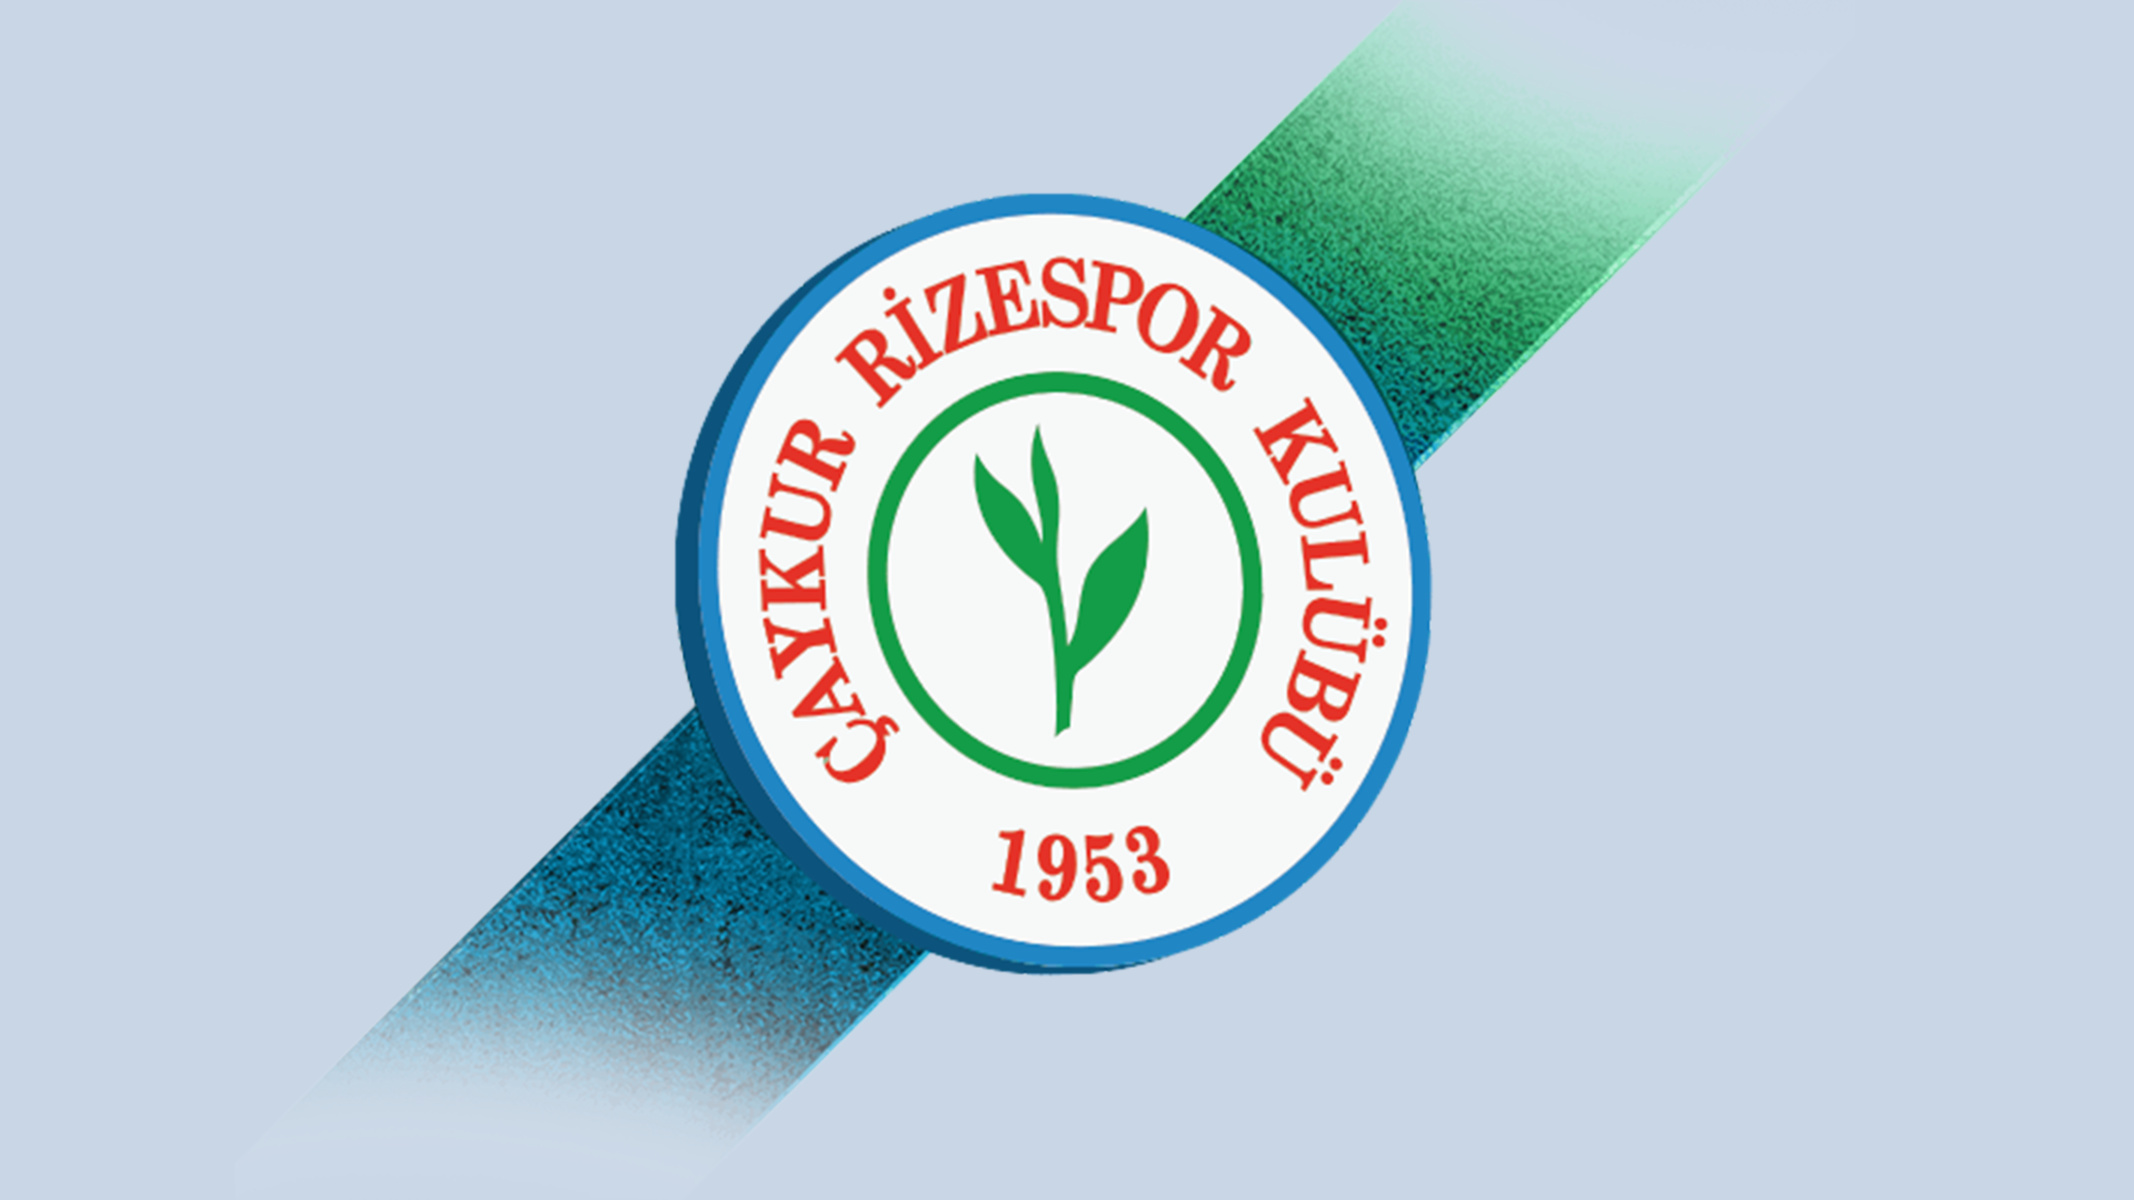 caykur-rizespor-22-football-club-facts